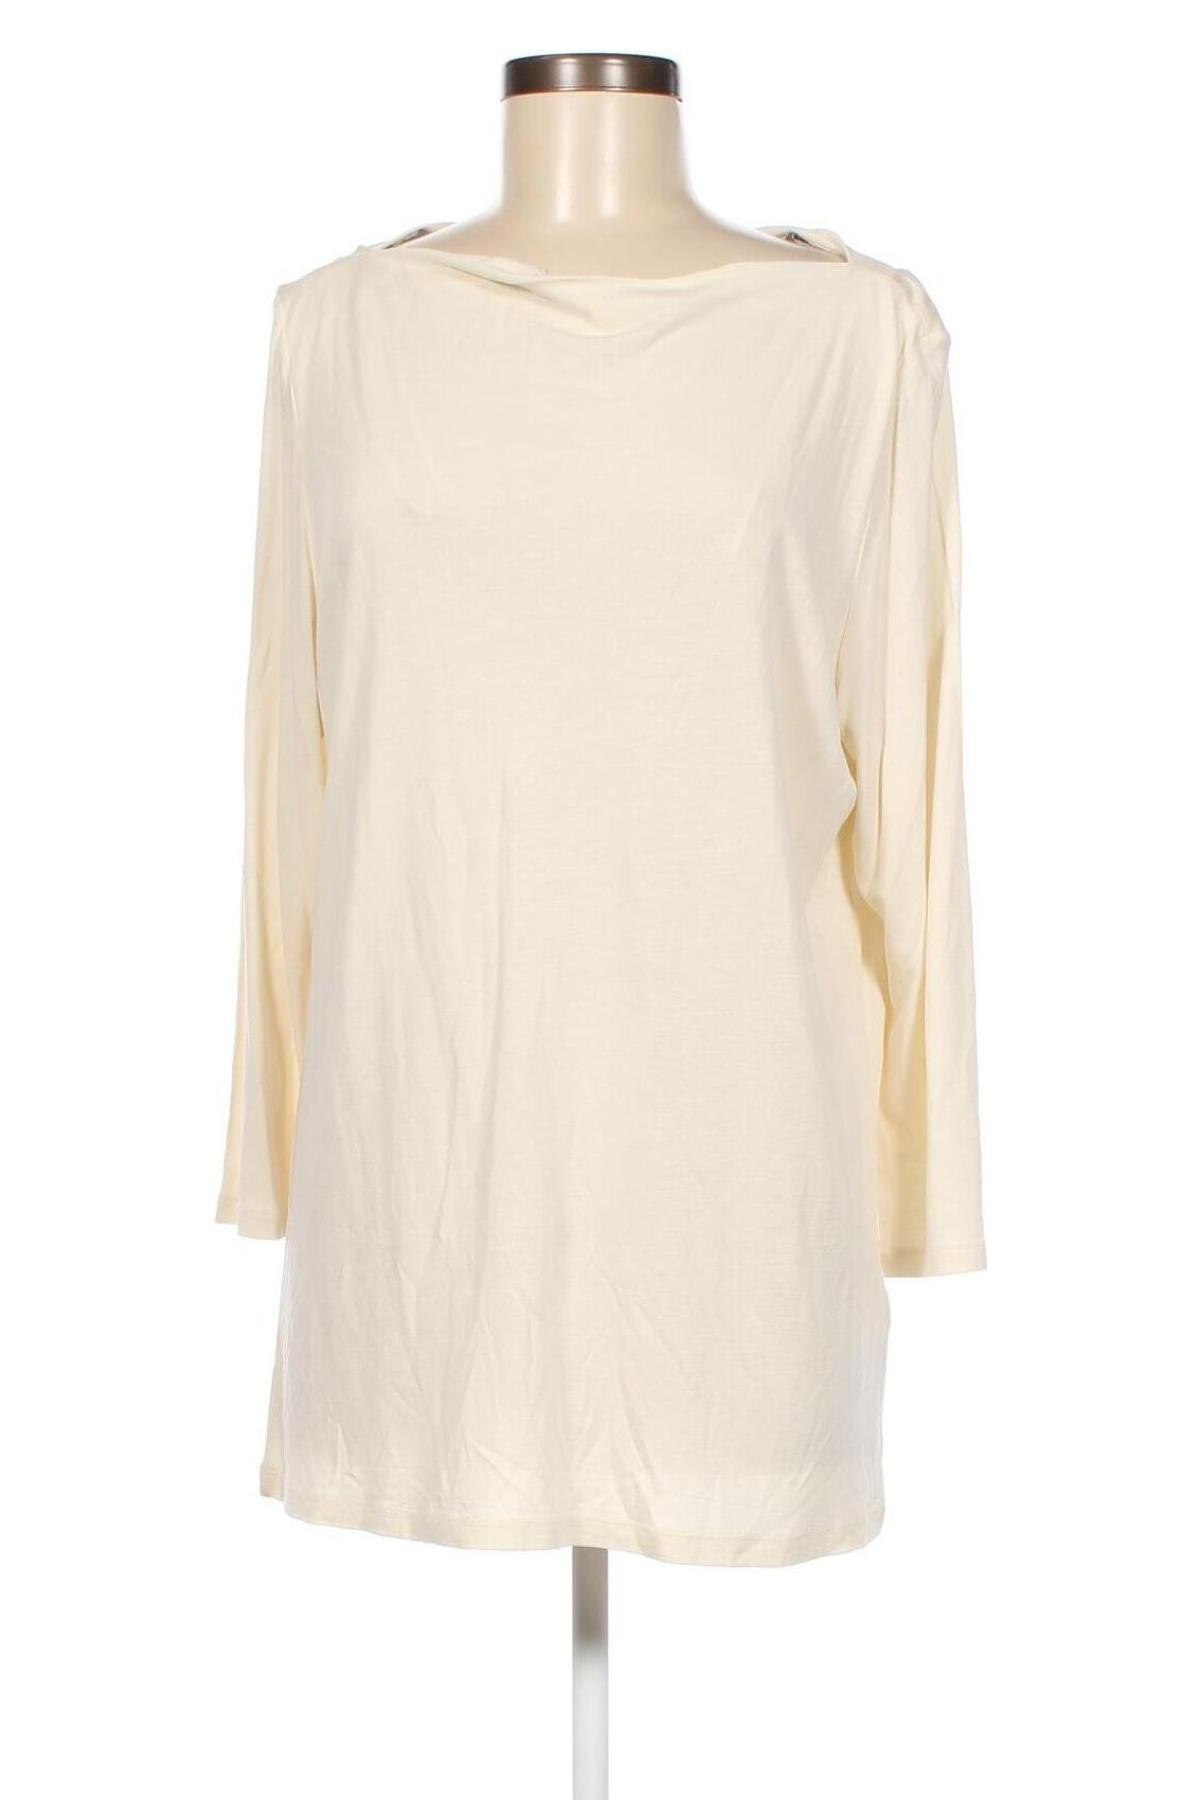 Γυναικεία μπλούζα Esprit, Μέγεθος XL, Χρώμα Εκρού, Βισκόζη, Τιμή 19,79 €